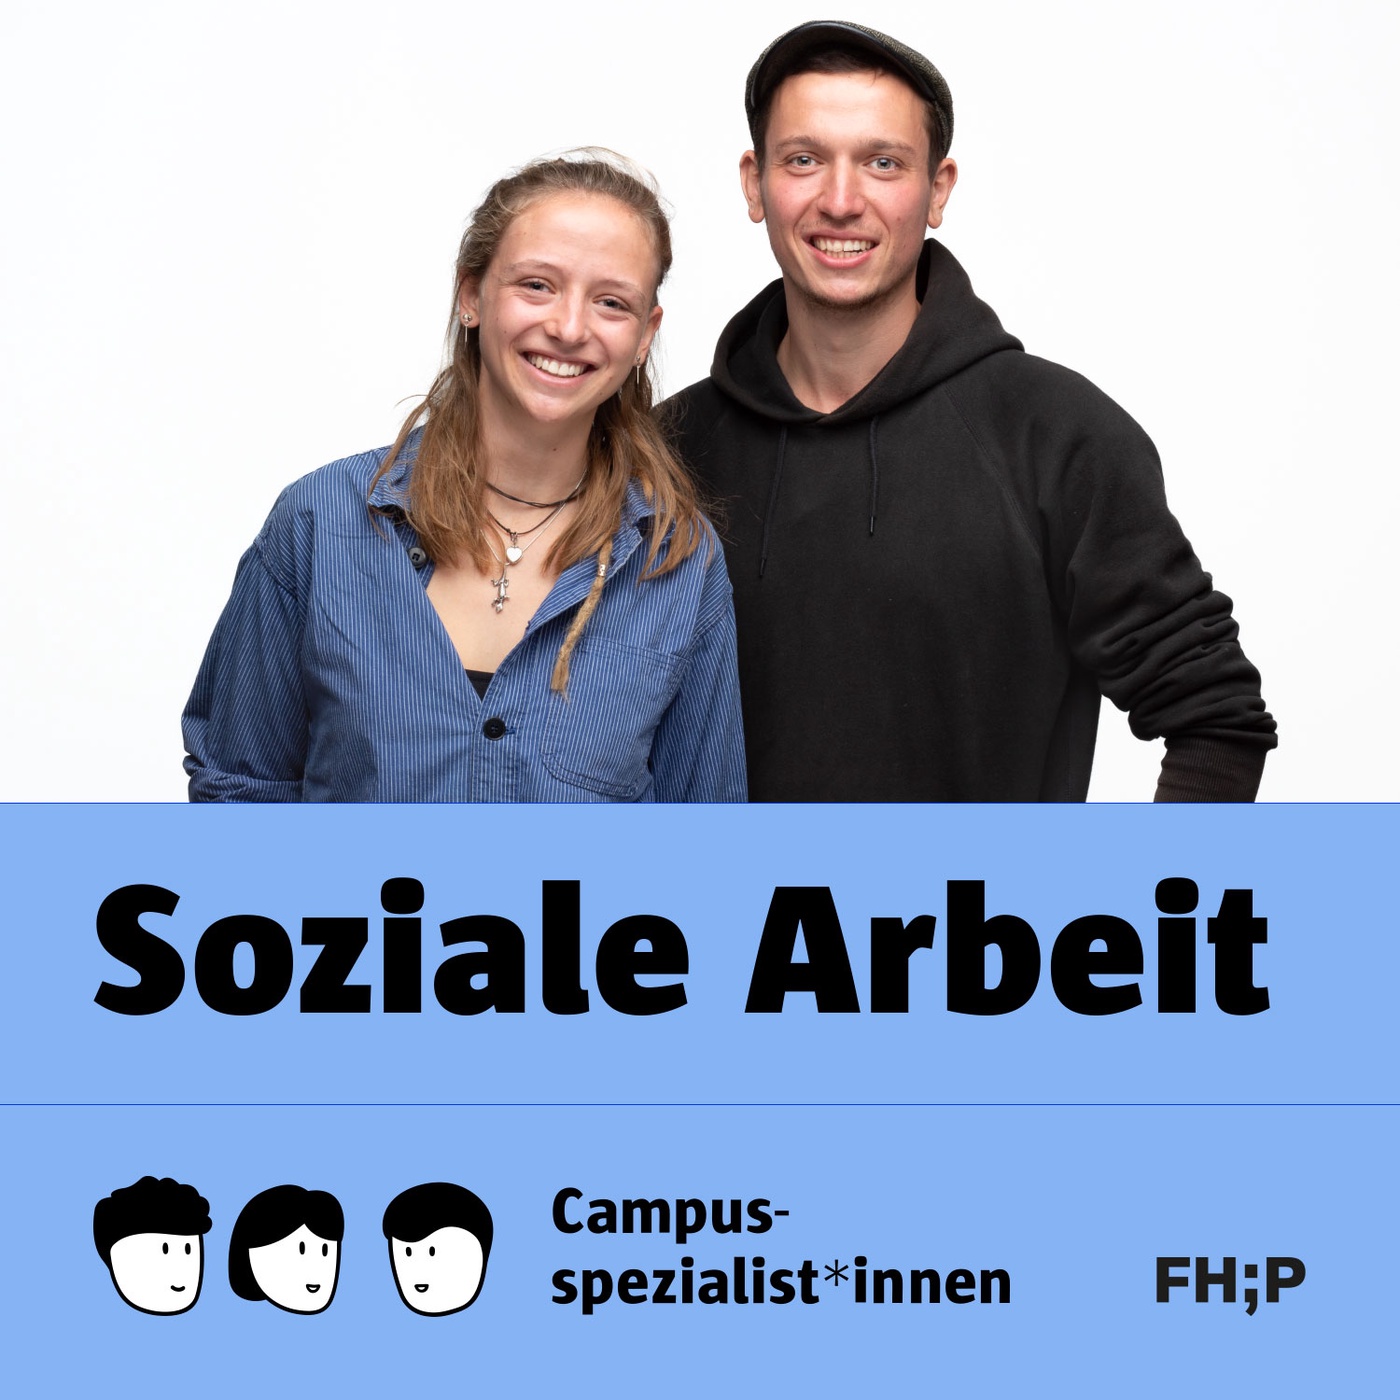 Soziale Arbeit - Folge 1: Soziale Arbeit, Potsdam und Wir. - Hendrik und Lotte erzählen.